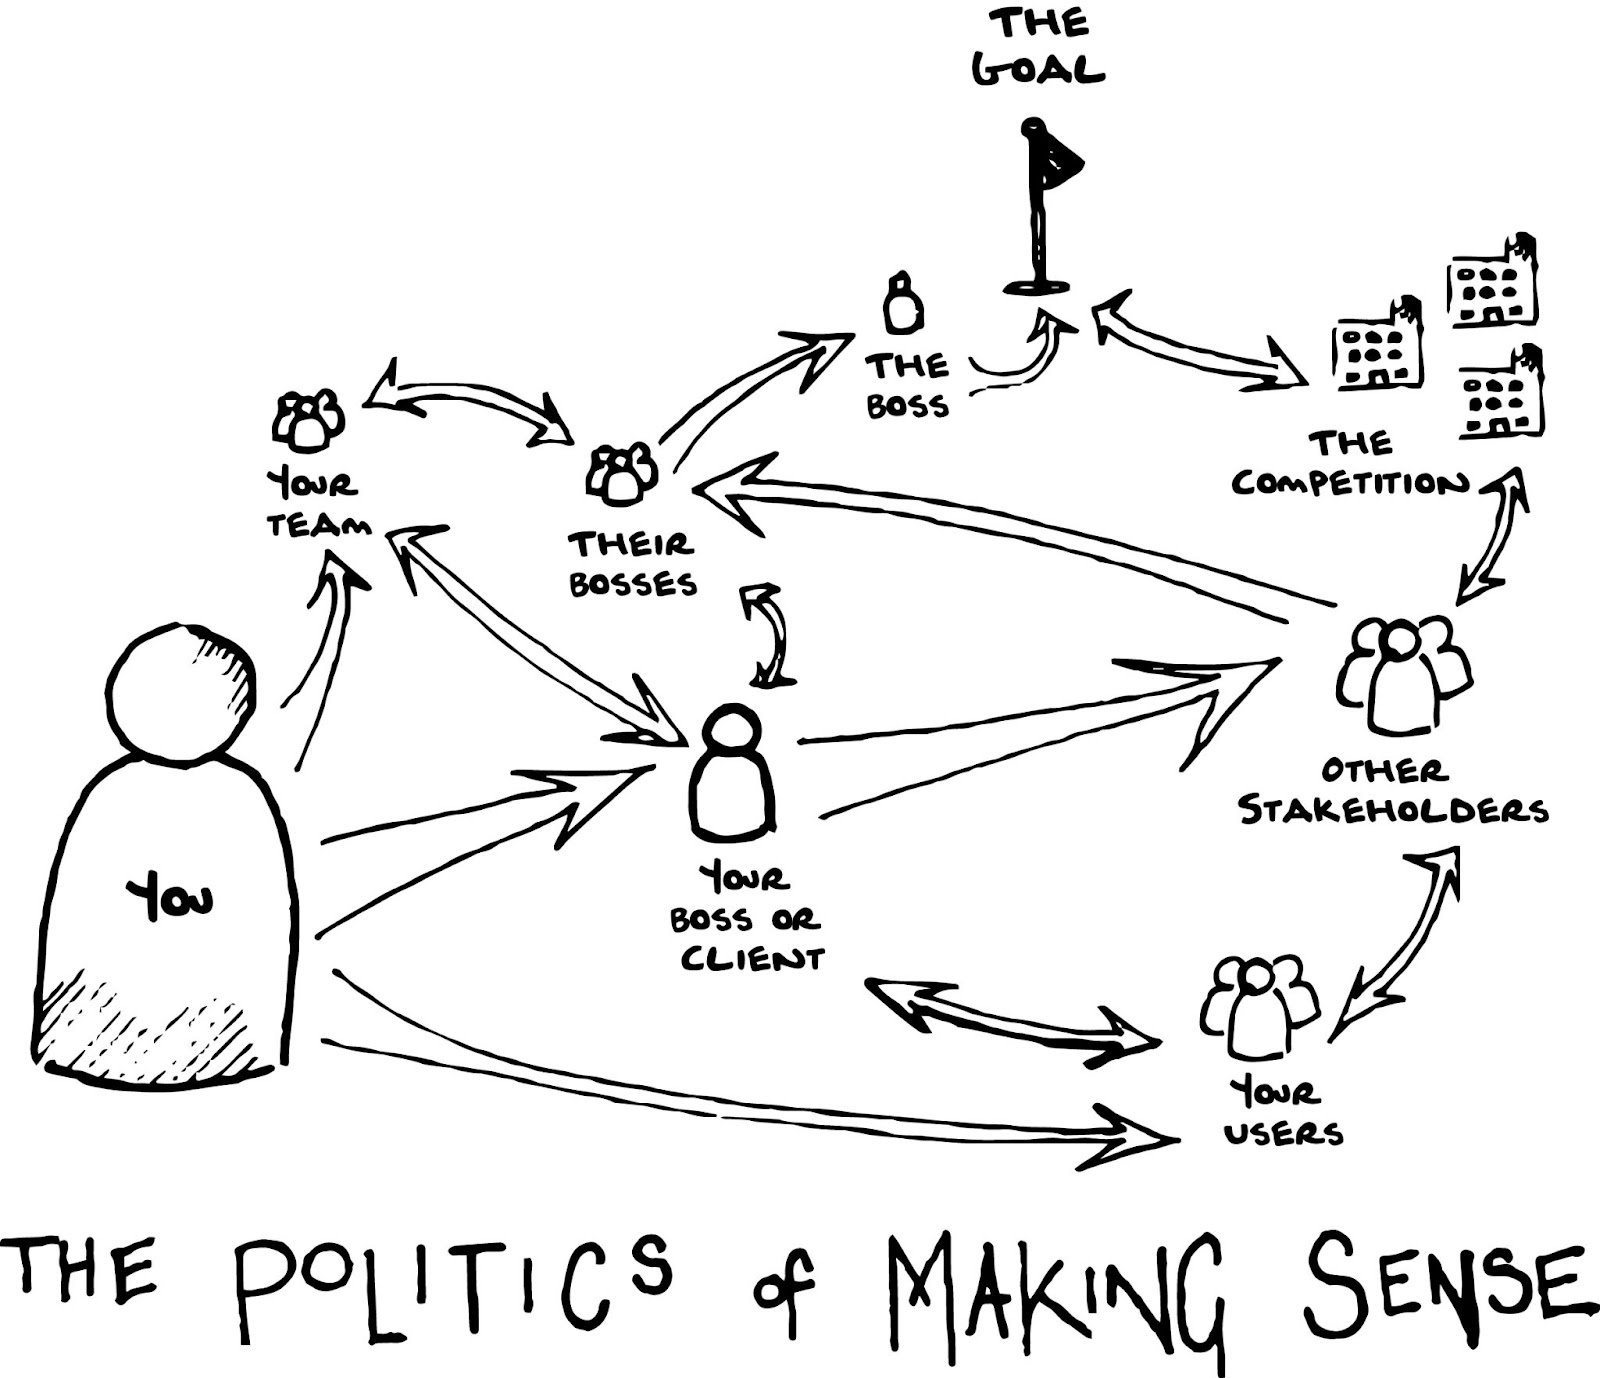 The politics of making sense